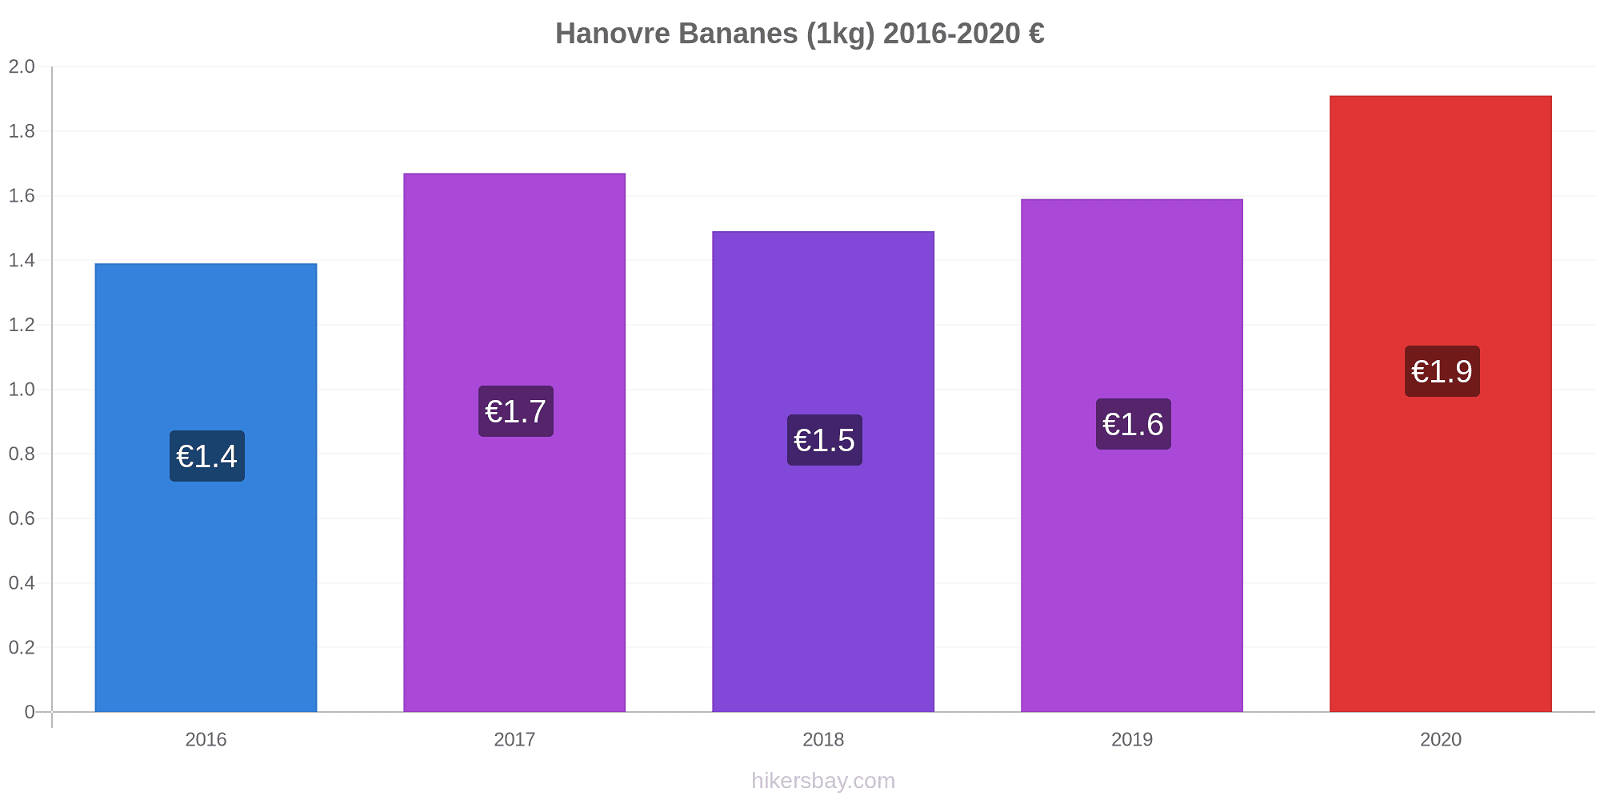 Hanovre changements de prix Bananes (1kg) hikersbay.com